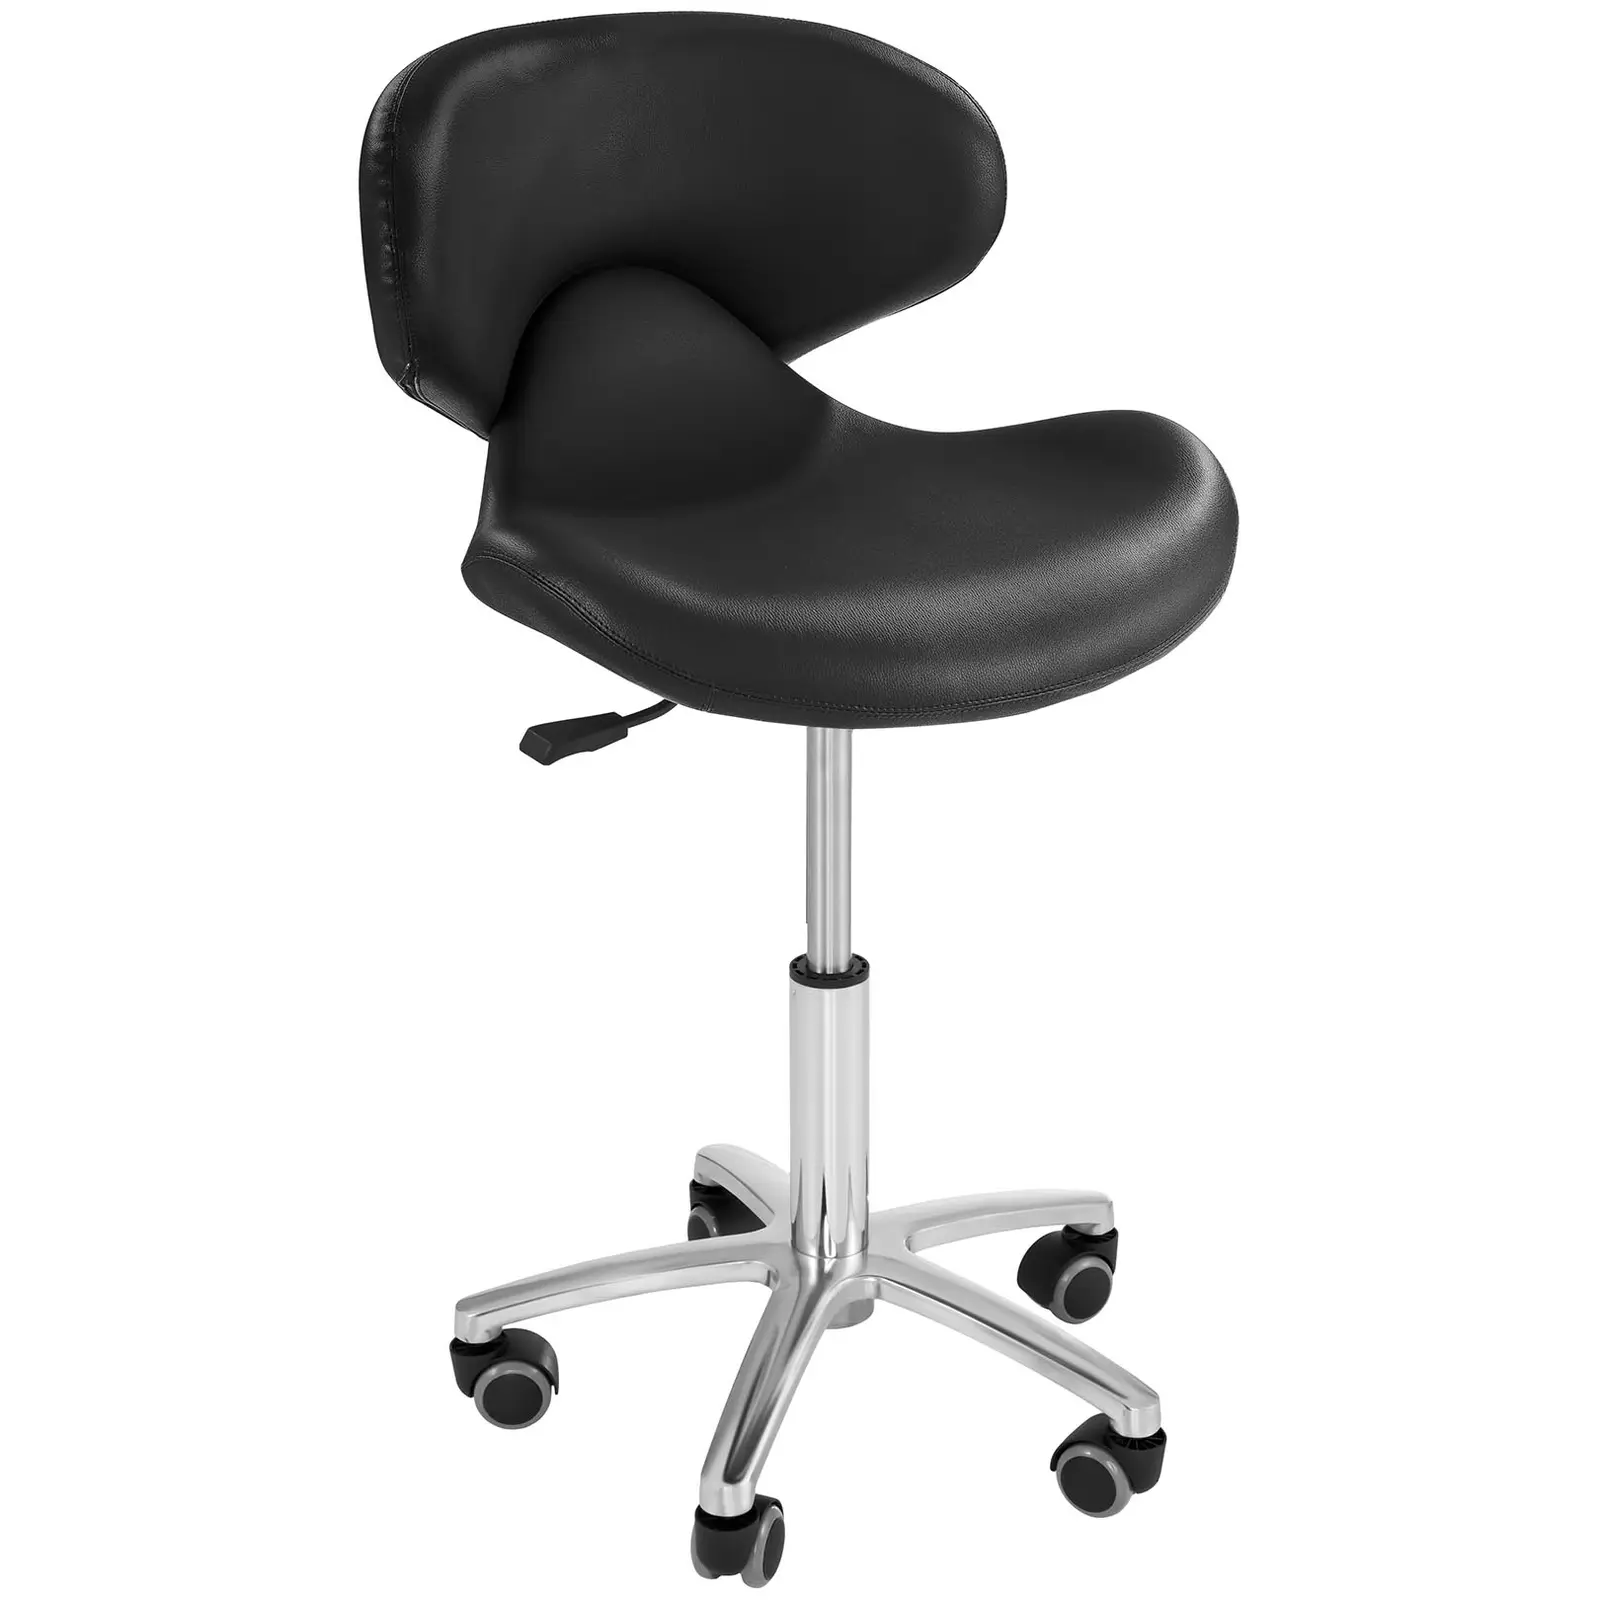 Fodrász szék - 440–570 mm - 150 kg - Fekete | physa